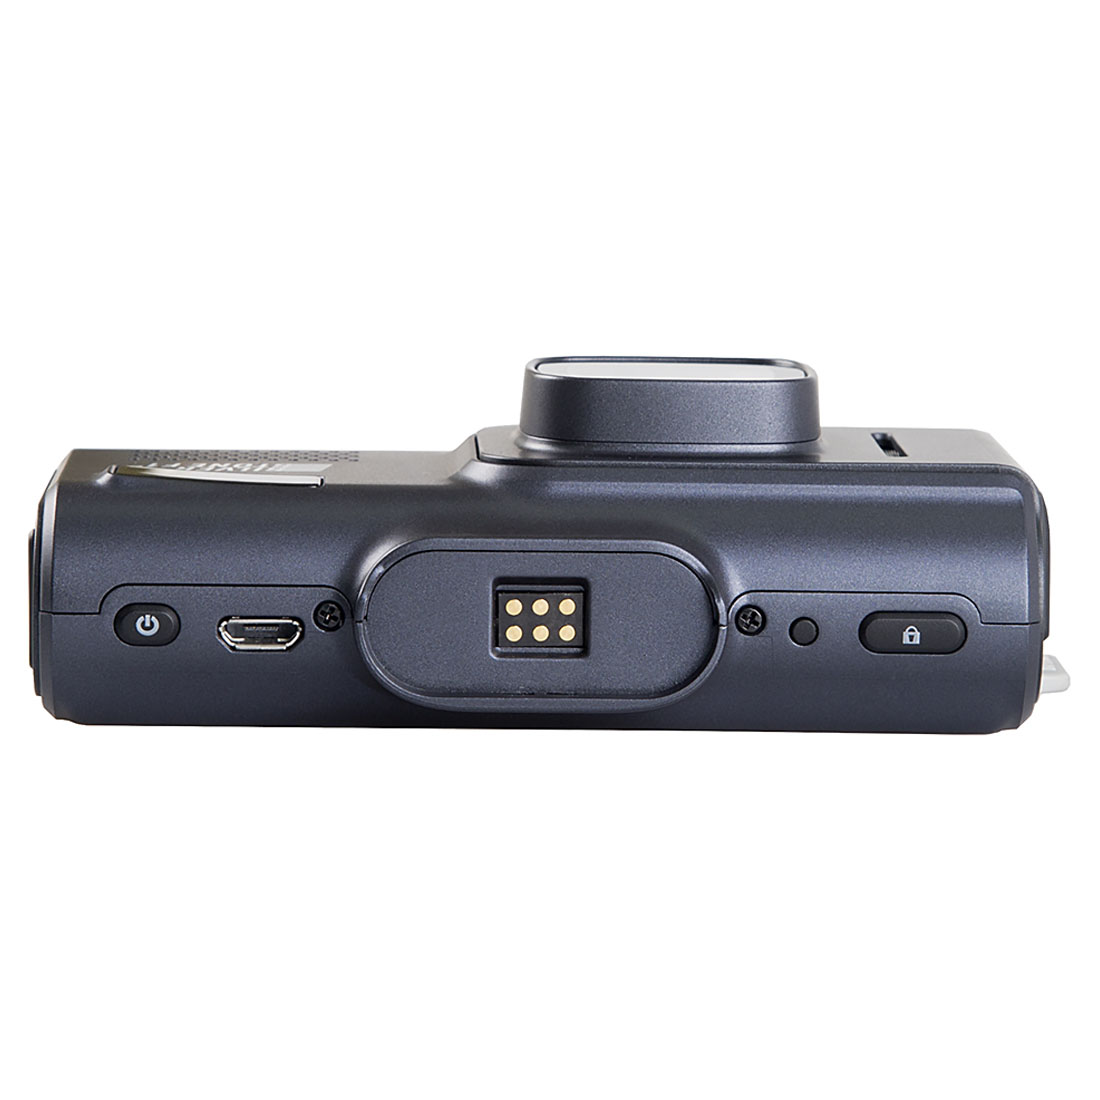 Автомобильный видеорегистратор с радар-детектором SILVERSTONE F1 HYBRID UNO SPORT, Wi-Fi, цвет темно серебристый